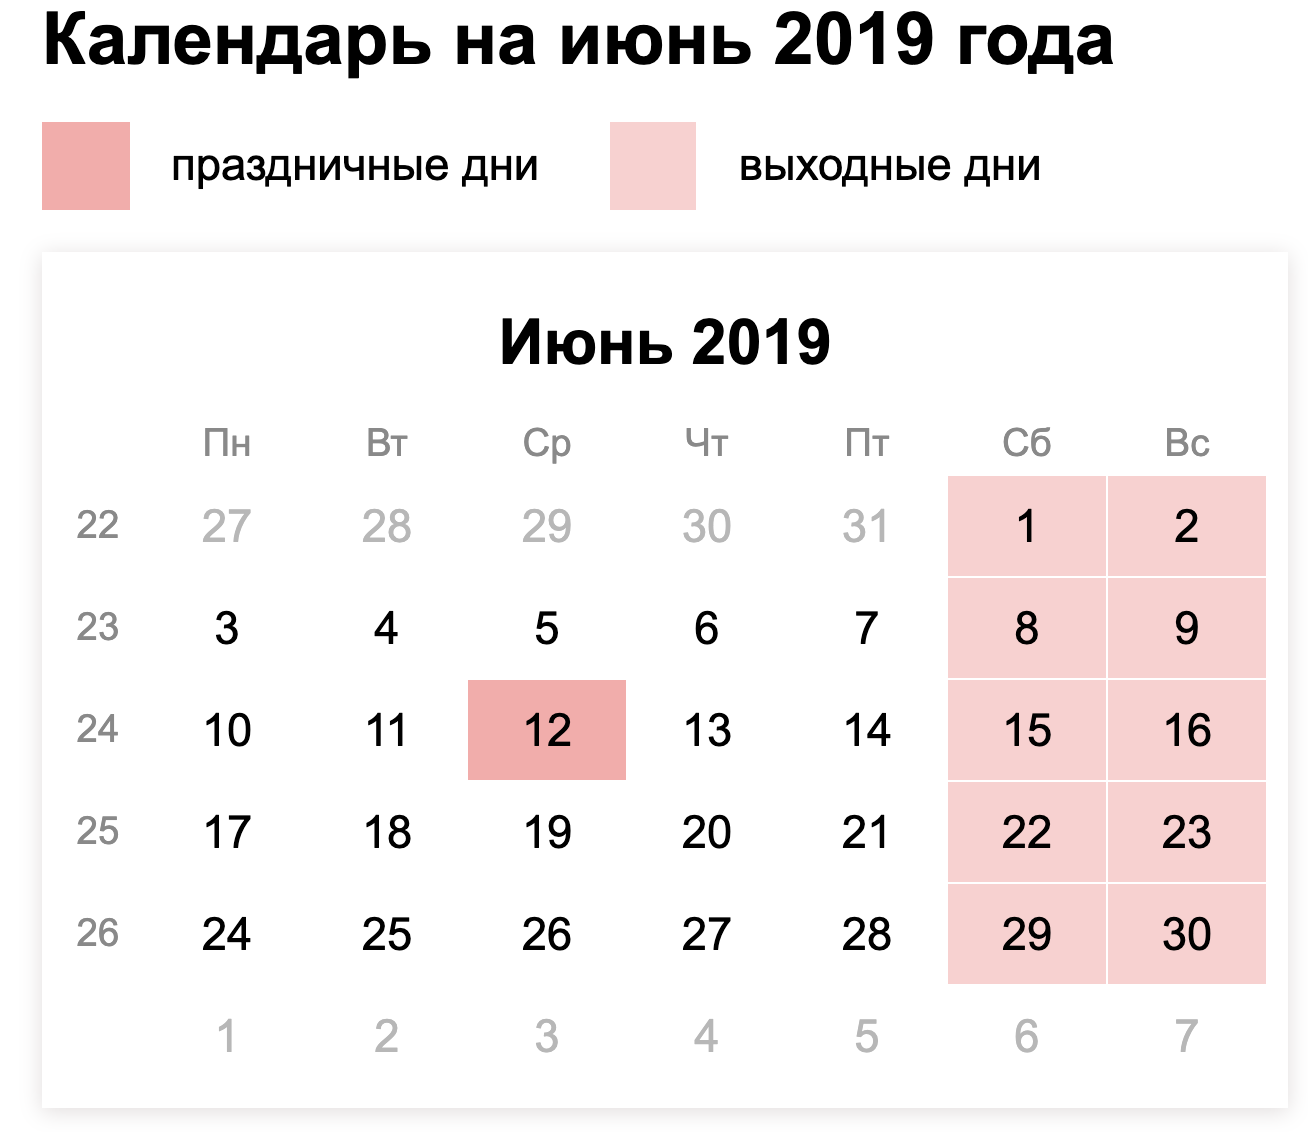 Производственный календарь на июнь 2019 года